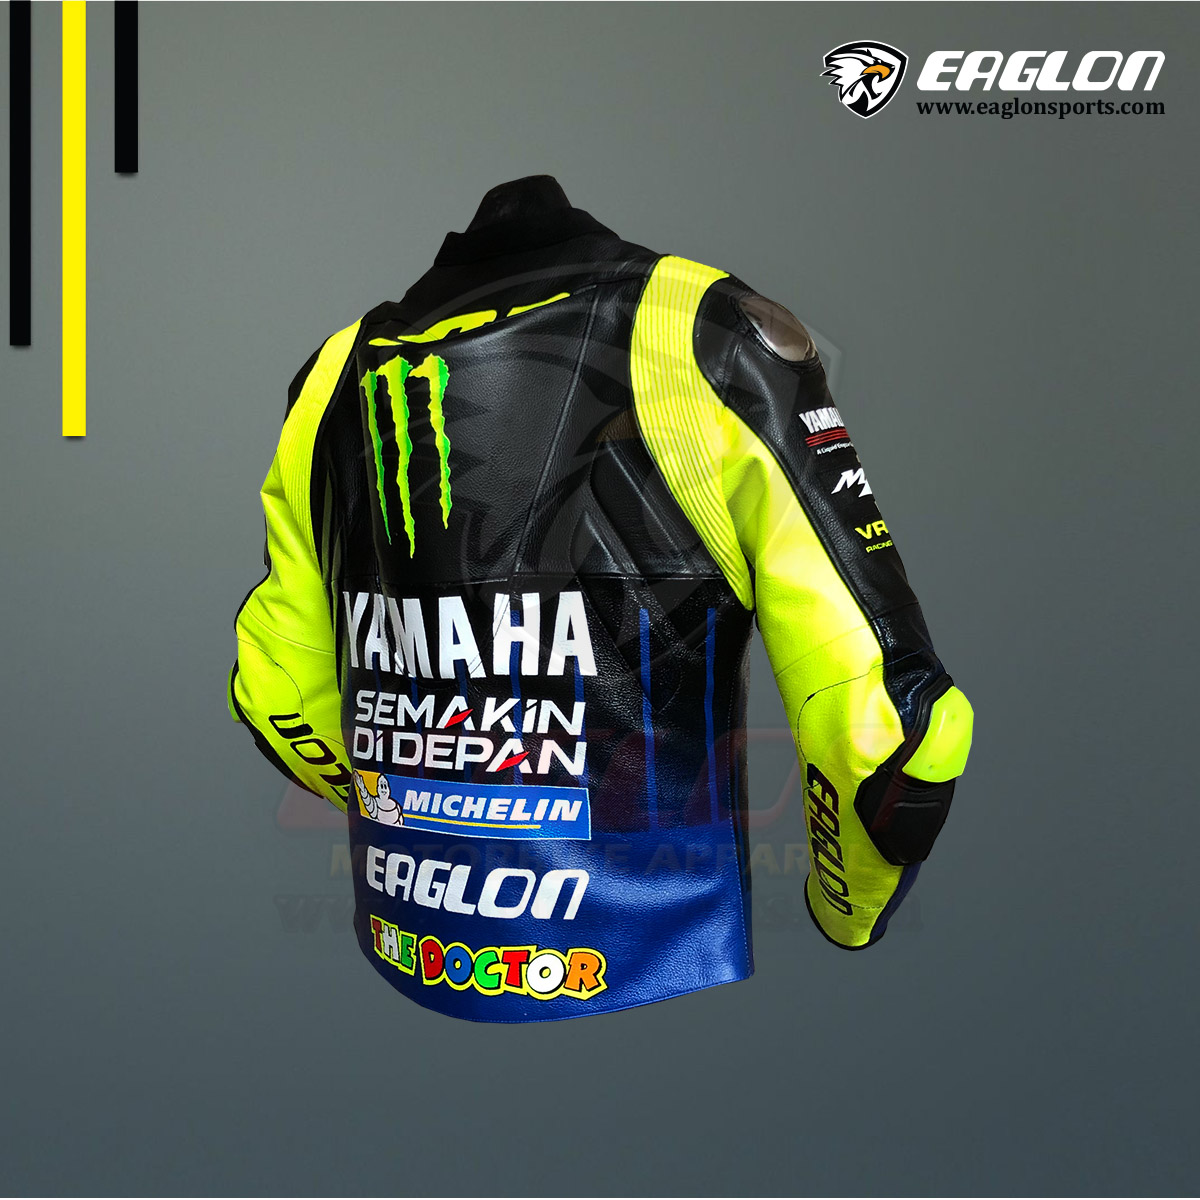 Valentino-Rossi-Yamaha-MotoGP-2019-Leather-Jacket